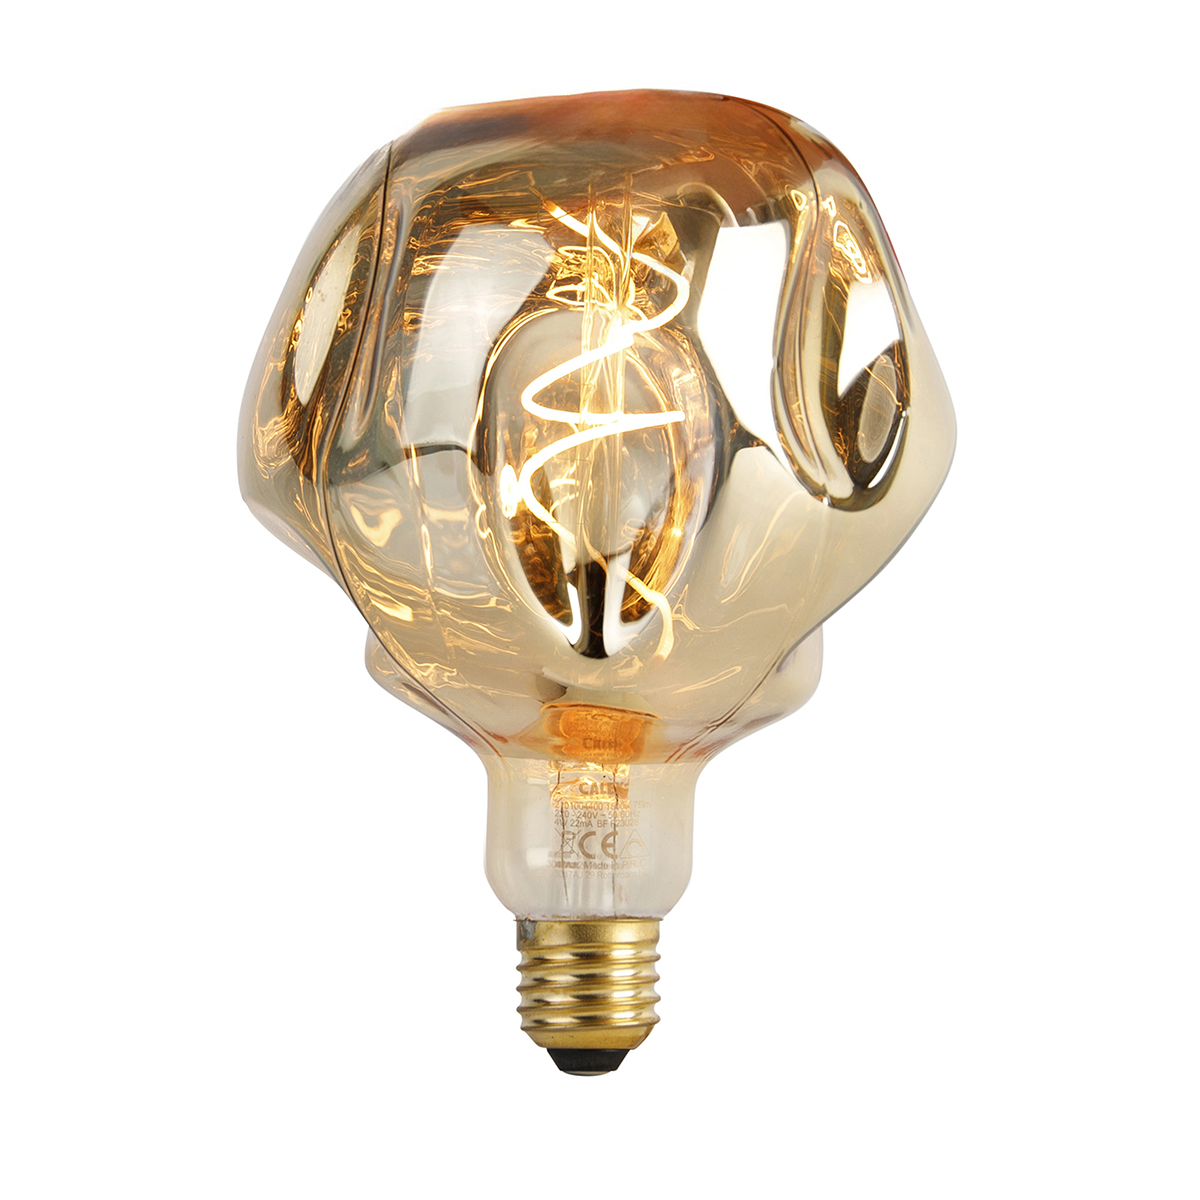 E27 szabályozható LED lámpa G125 tükör arany 4W 75 lm 1800K